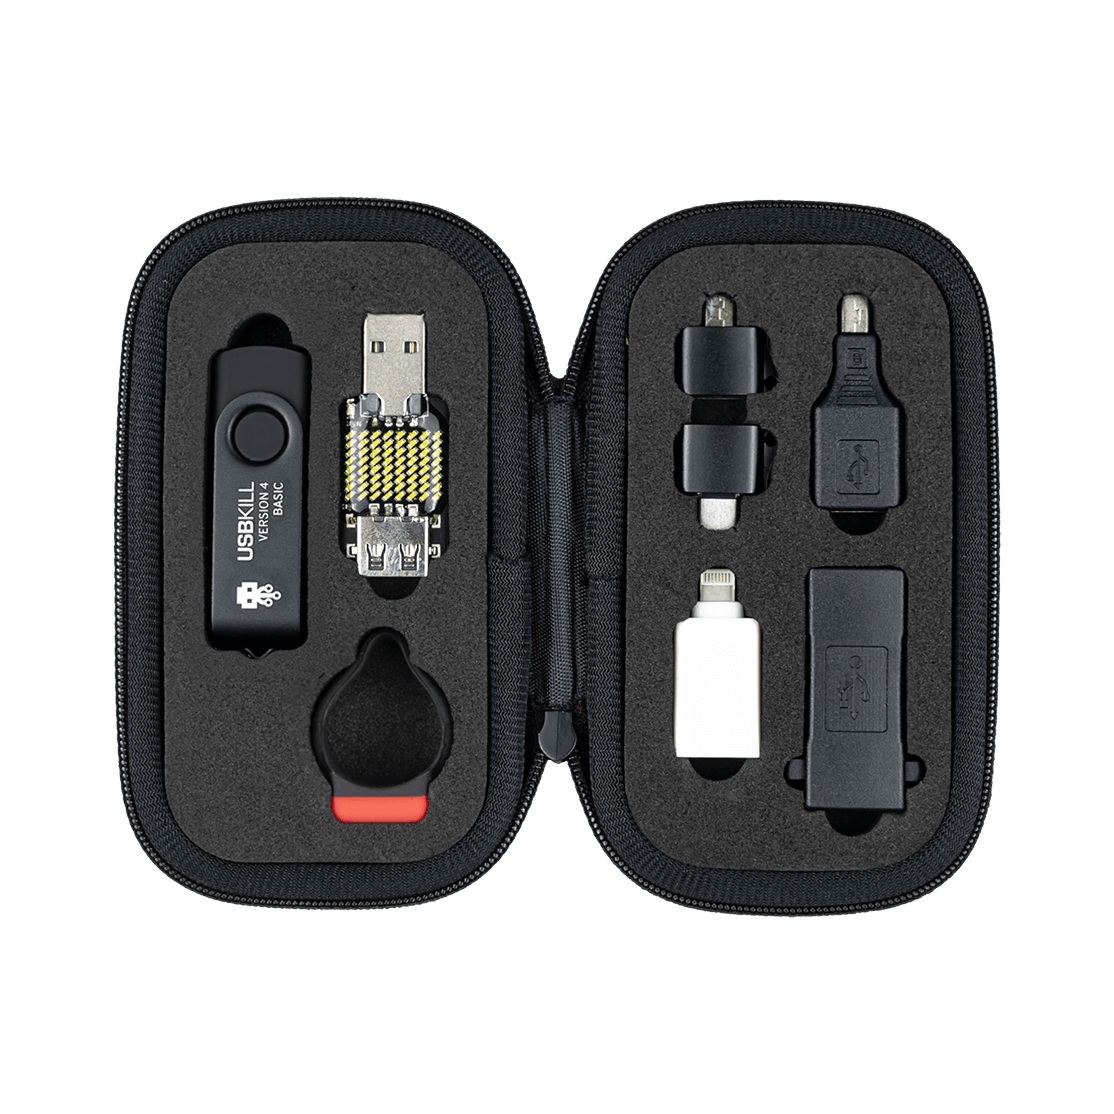 USBKill V4 Kit